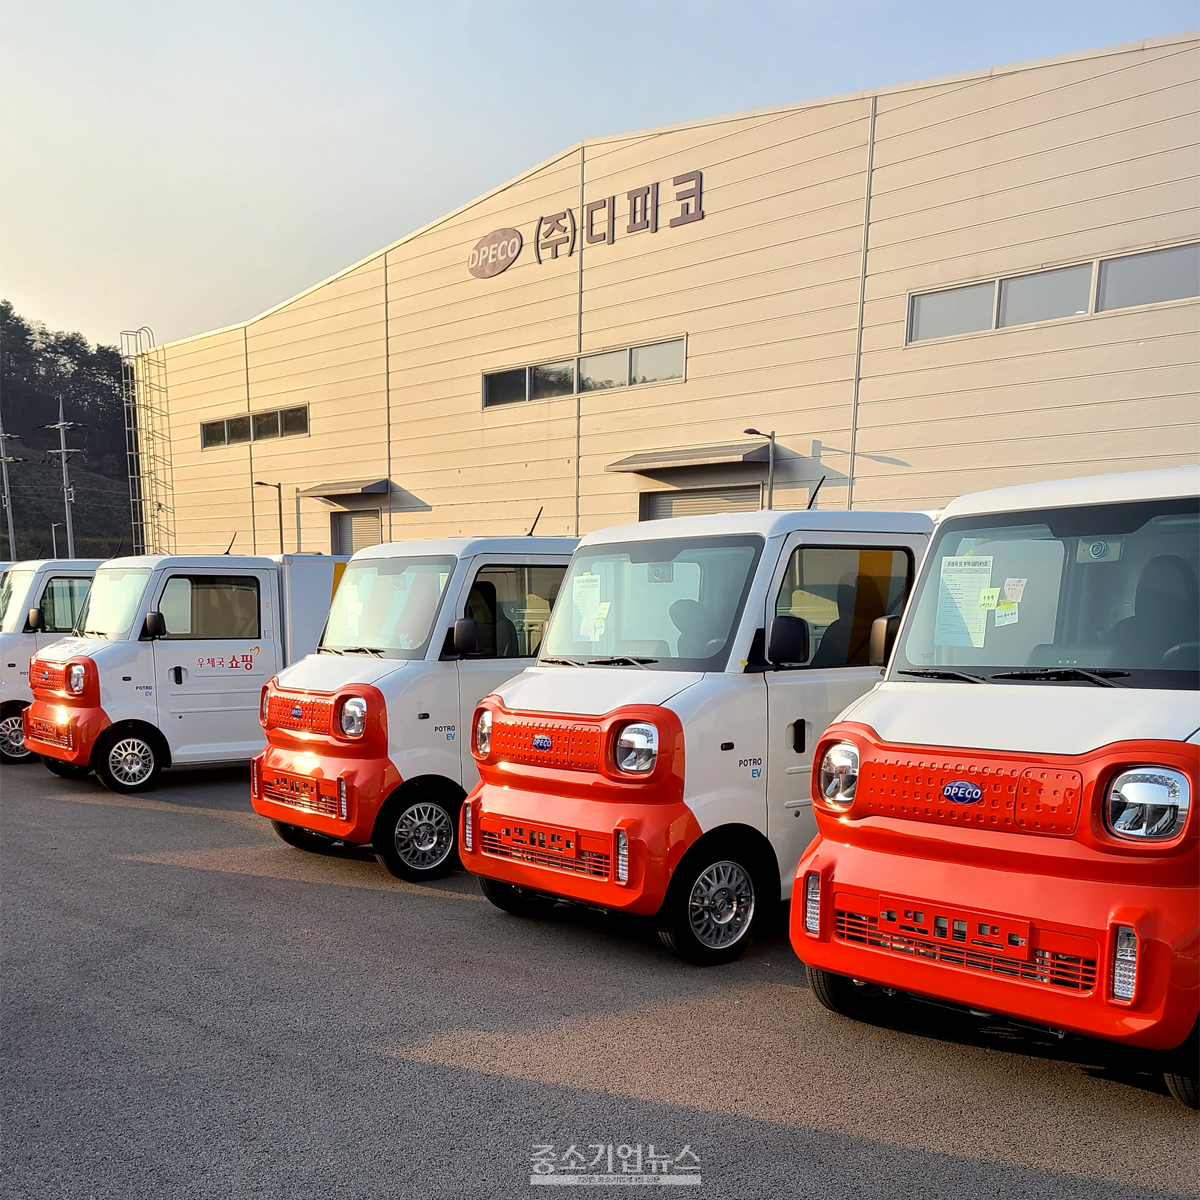 한국전기차인프라서비스사업협동조합의 조합원사인 디피코는 국내 전기상용차 제조사로는 최초로 전기화물차에 배터리 매니지먼트 관리 시스템을 탑재했다.